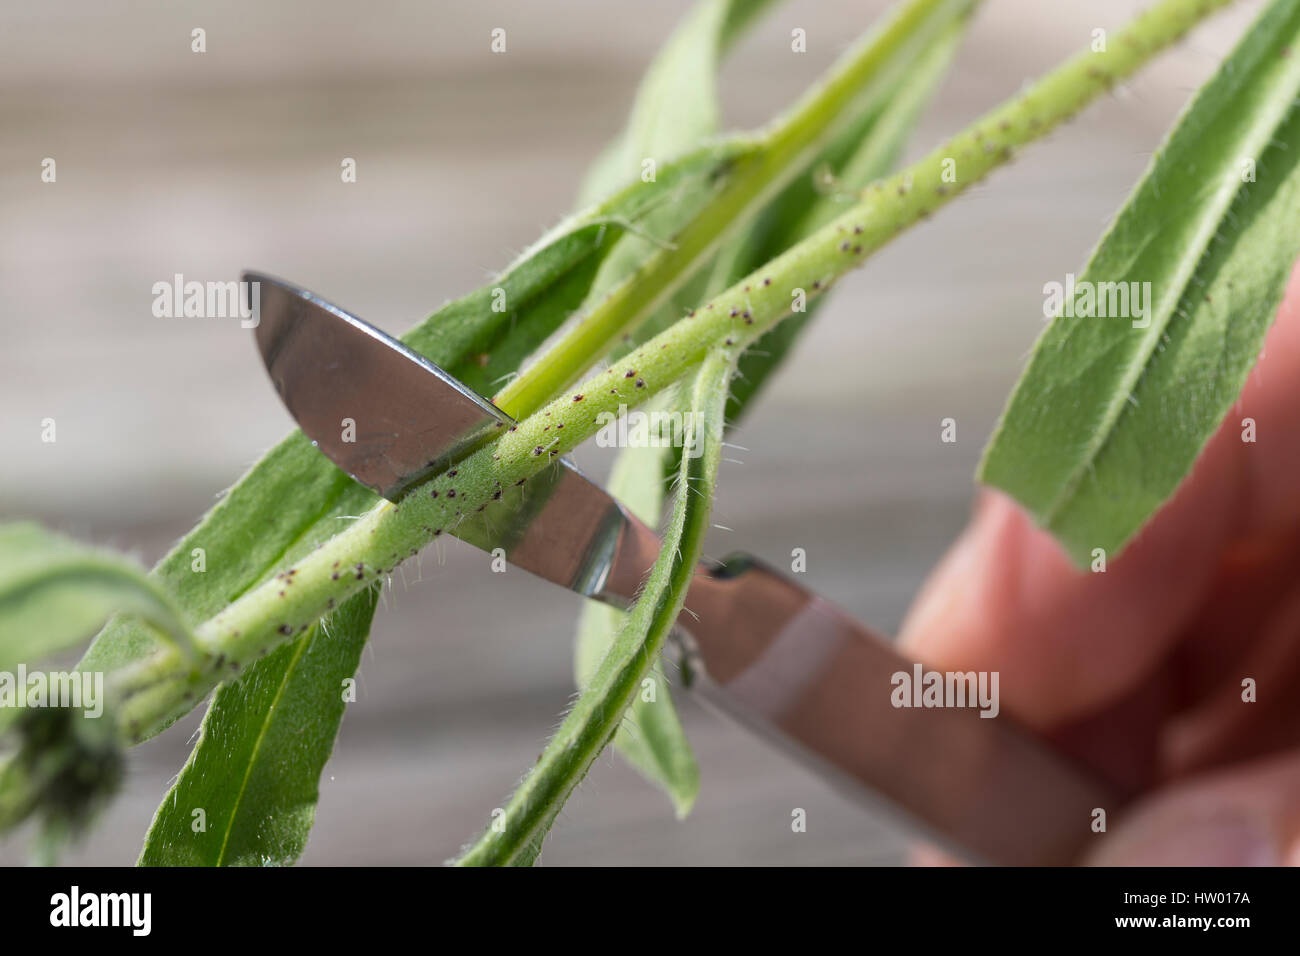 Pflanzen aufschneiden, dickere Pflanzenteile werden aufgeschnitten, um besser gepresst werden zu können, Stengel, Stängel vom Natternkopf wird mit Ska Stock Photo